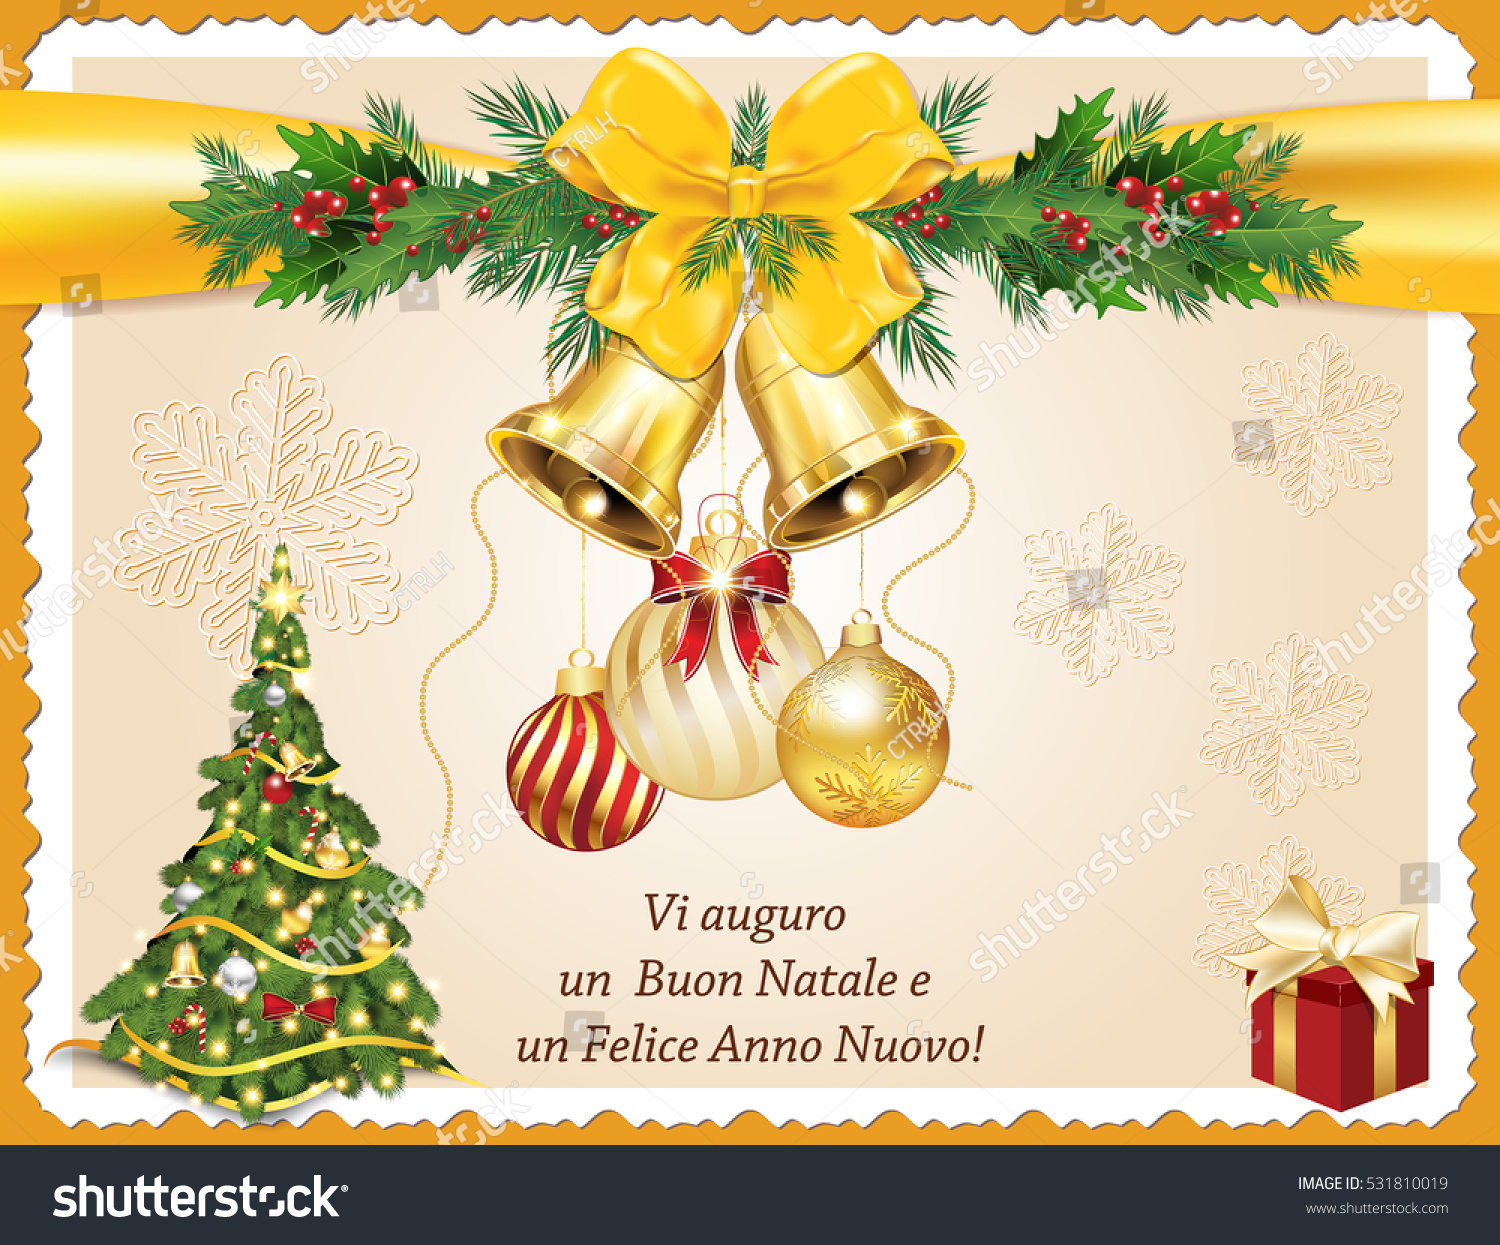 Immagini Natalizie E Buon Anno.Vi Auguro Un Buon Natale E Stock Illustration 531810019